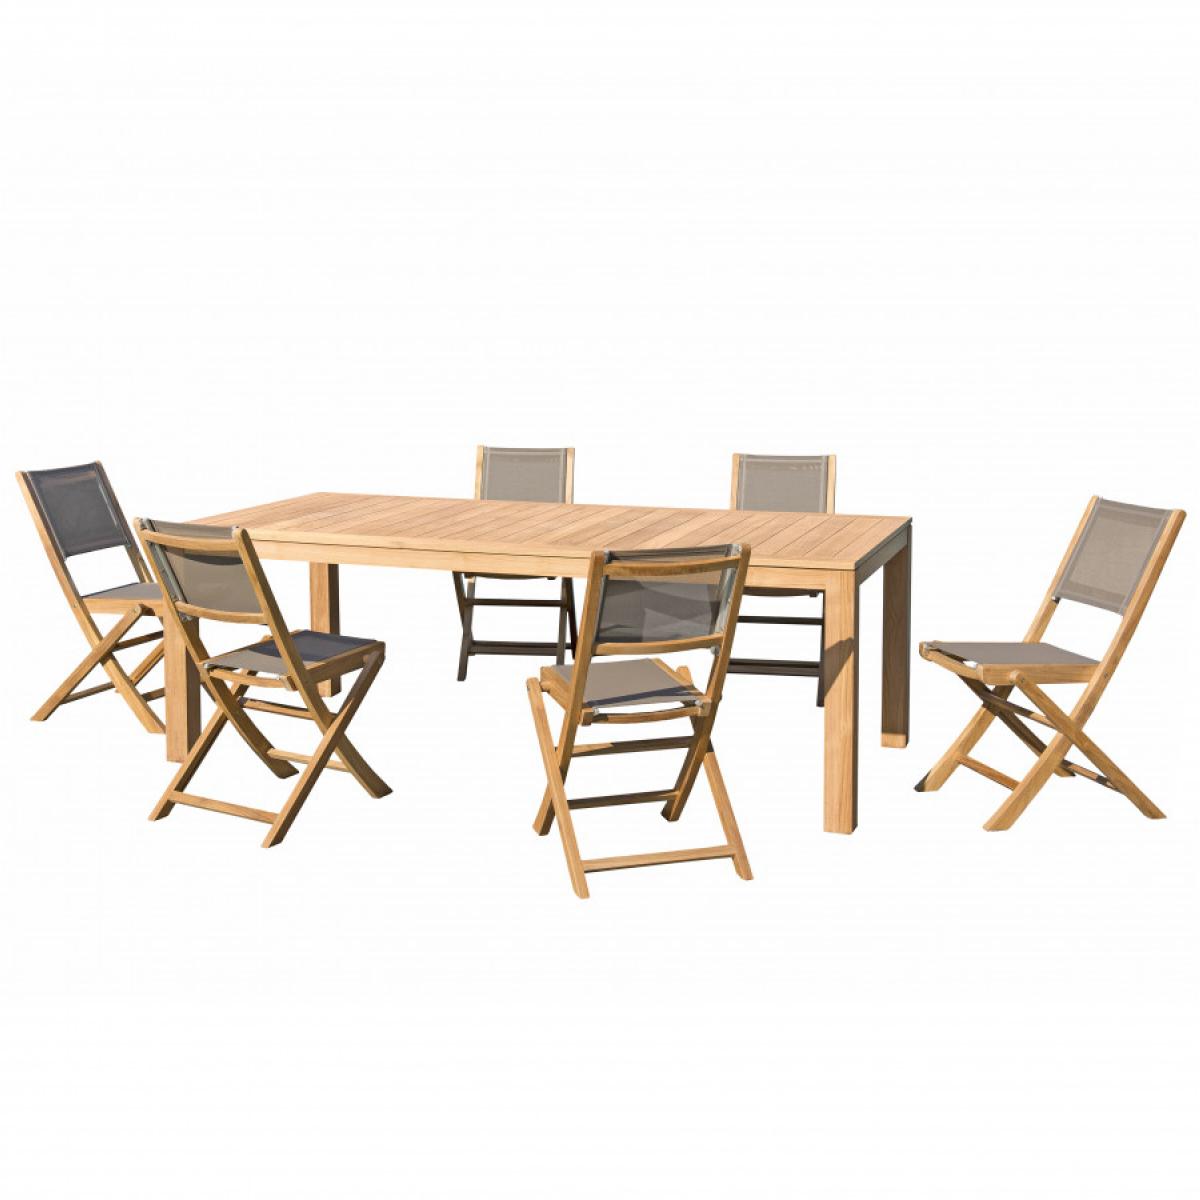 HALICE - SALON DE JARDIN EN BOIS TECK 6/8 personnes - 1 Table rectangulaire 220*100 cm et 6 chaises textilène